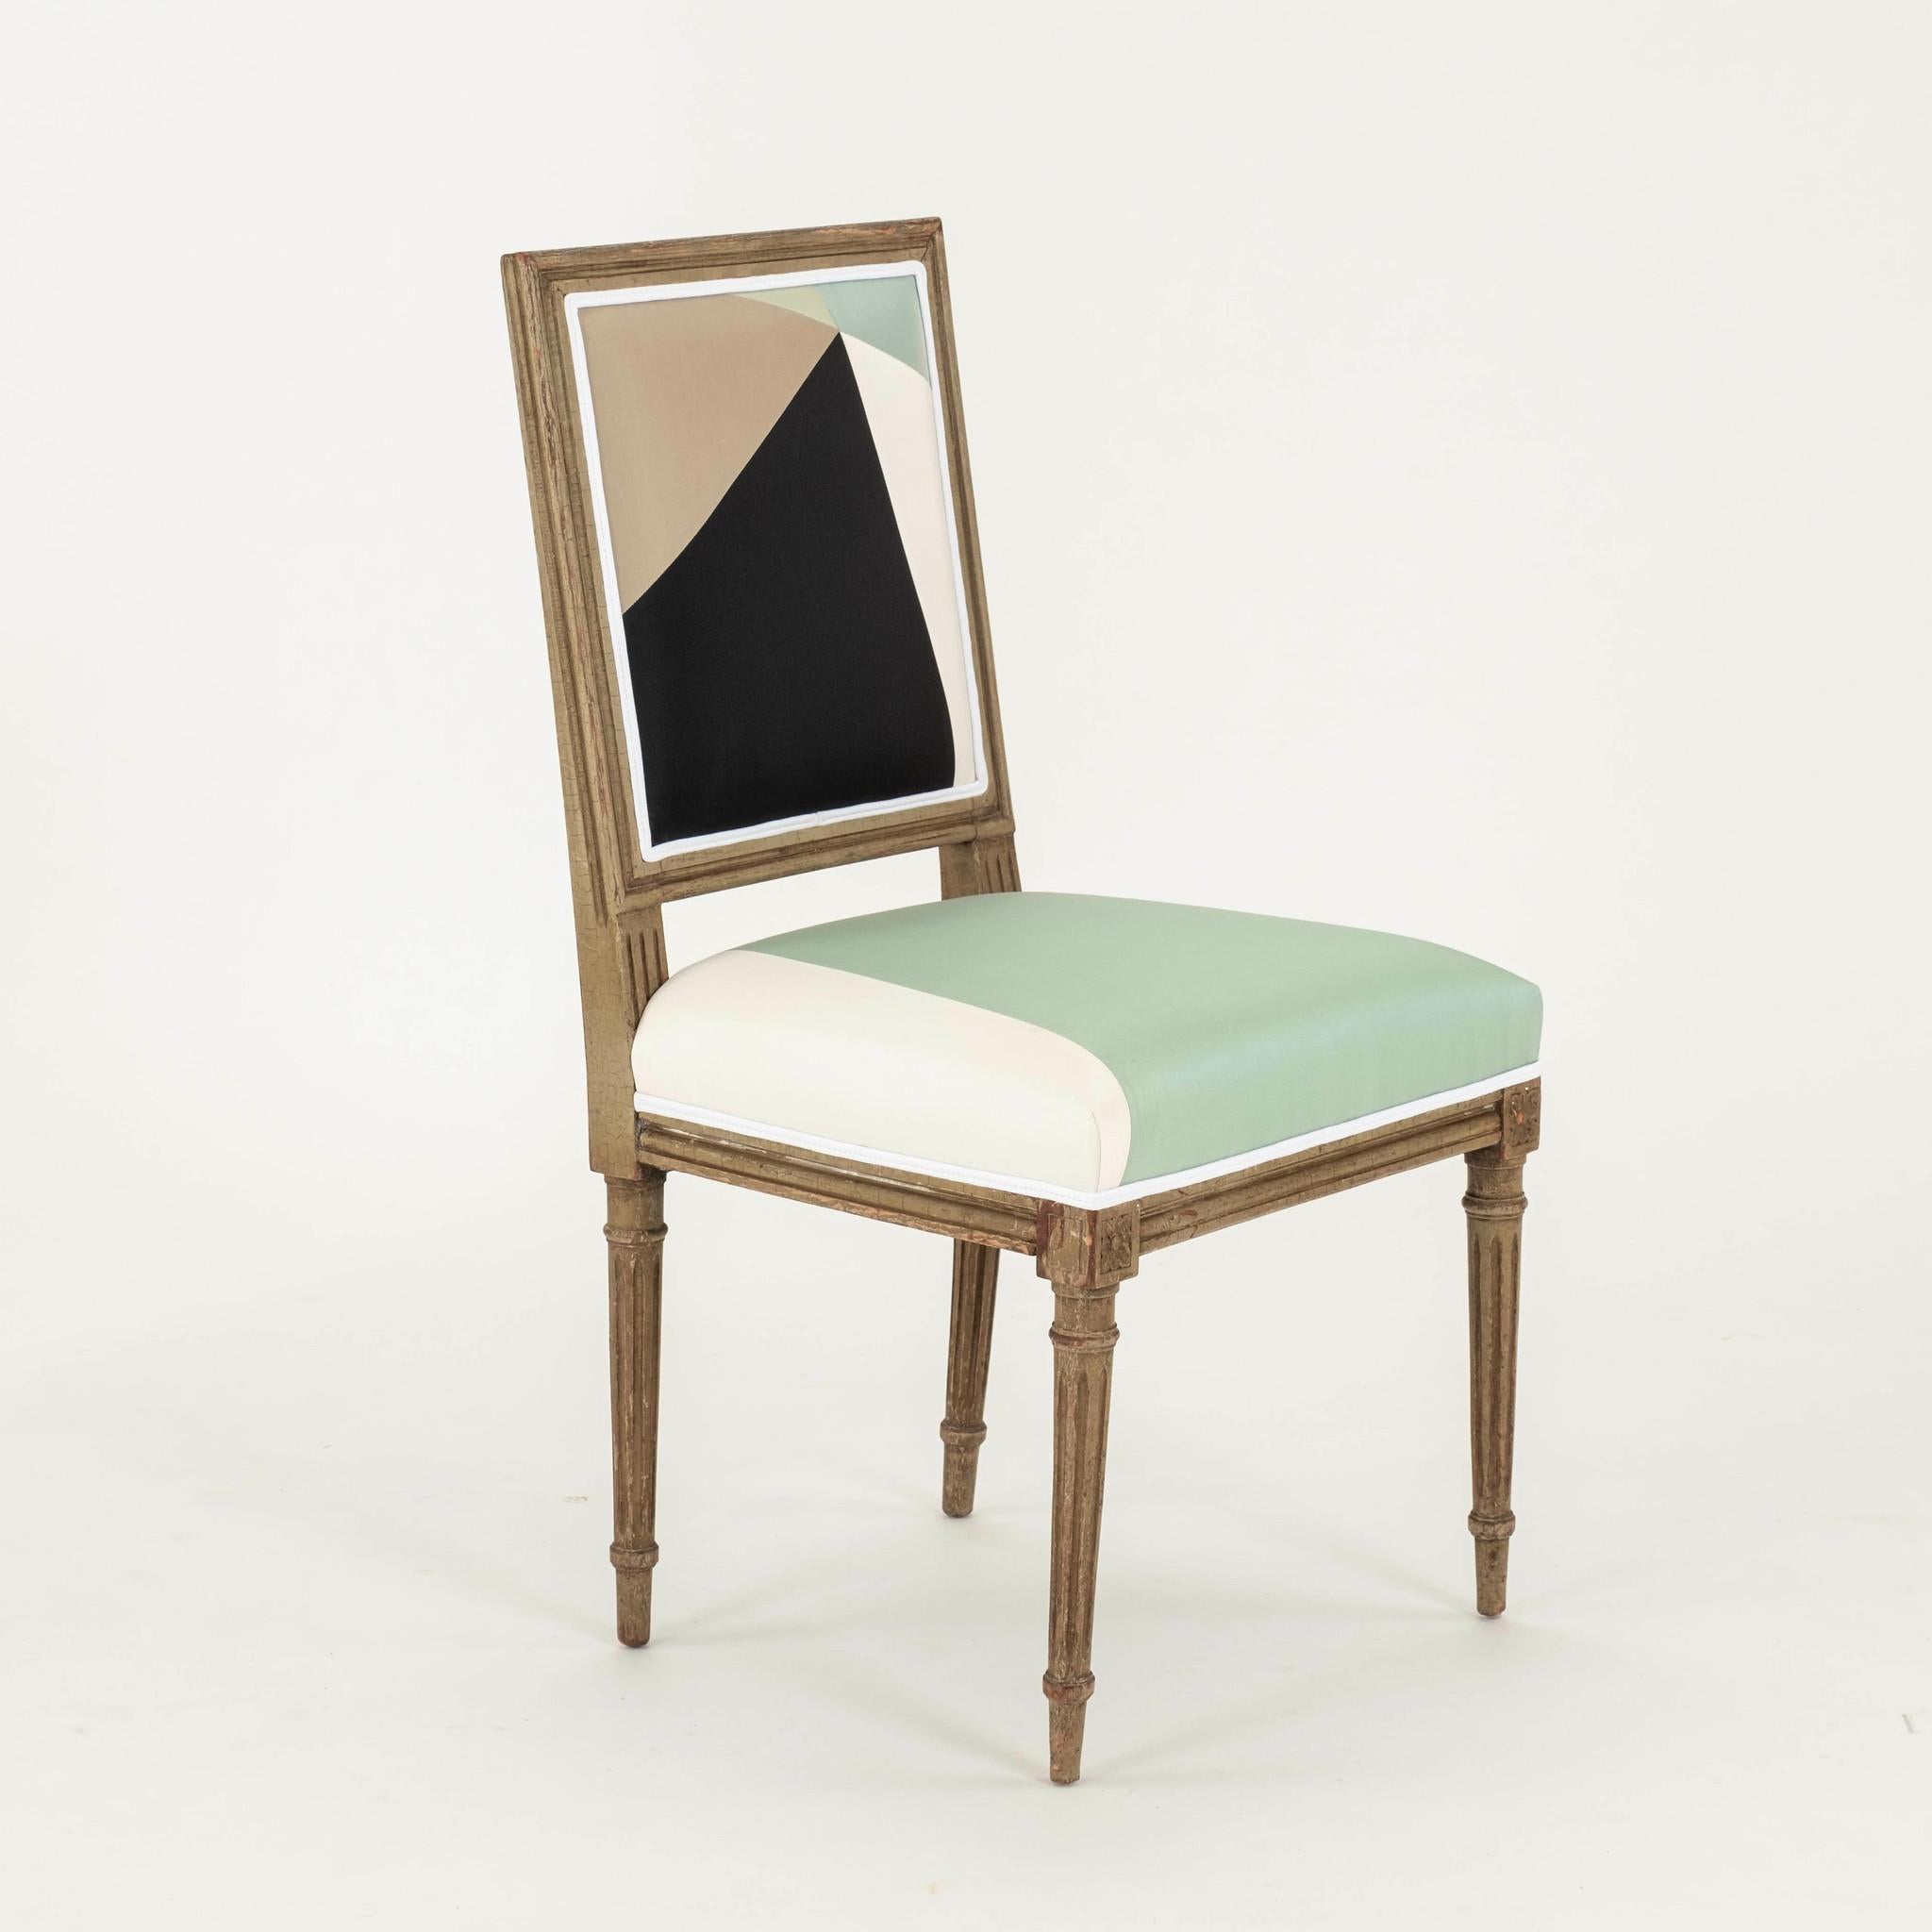 Bemalter Beistellstuhl aus der Zeit des Louis XVI: Rahmen aus antikem Hartholz, neu gestaltet mit einer kubistischen Pfauen-Seidenverkleidung von Miles Redd.

Zwei verfügbar, siehe anderes Angebot.